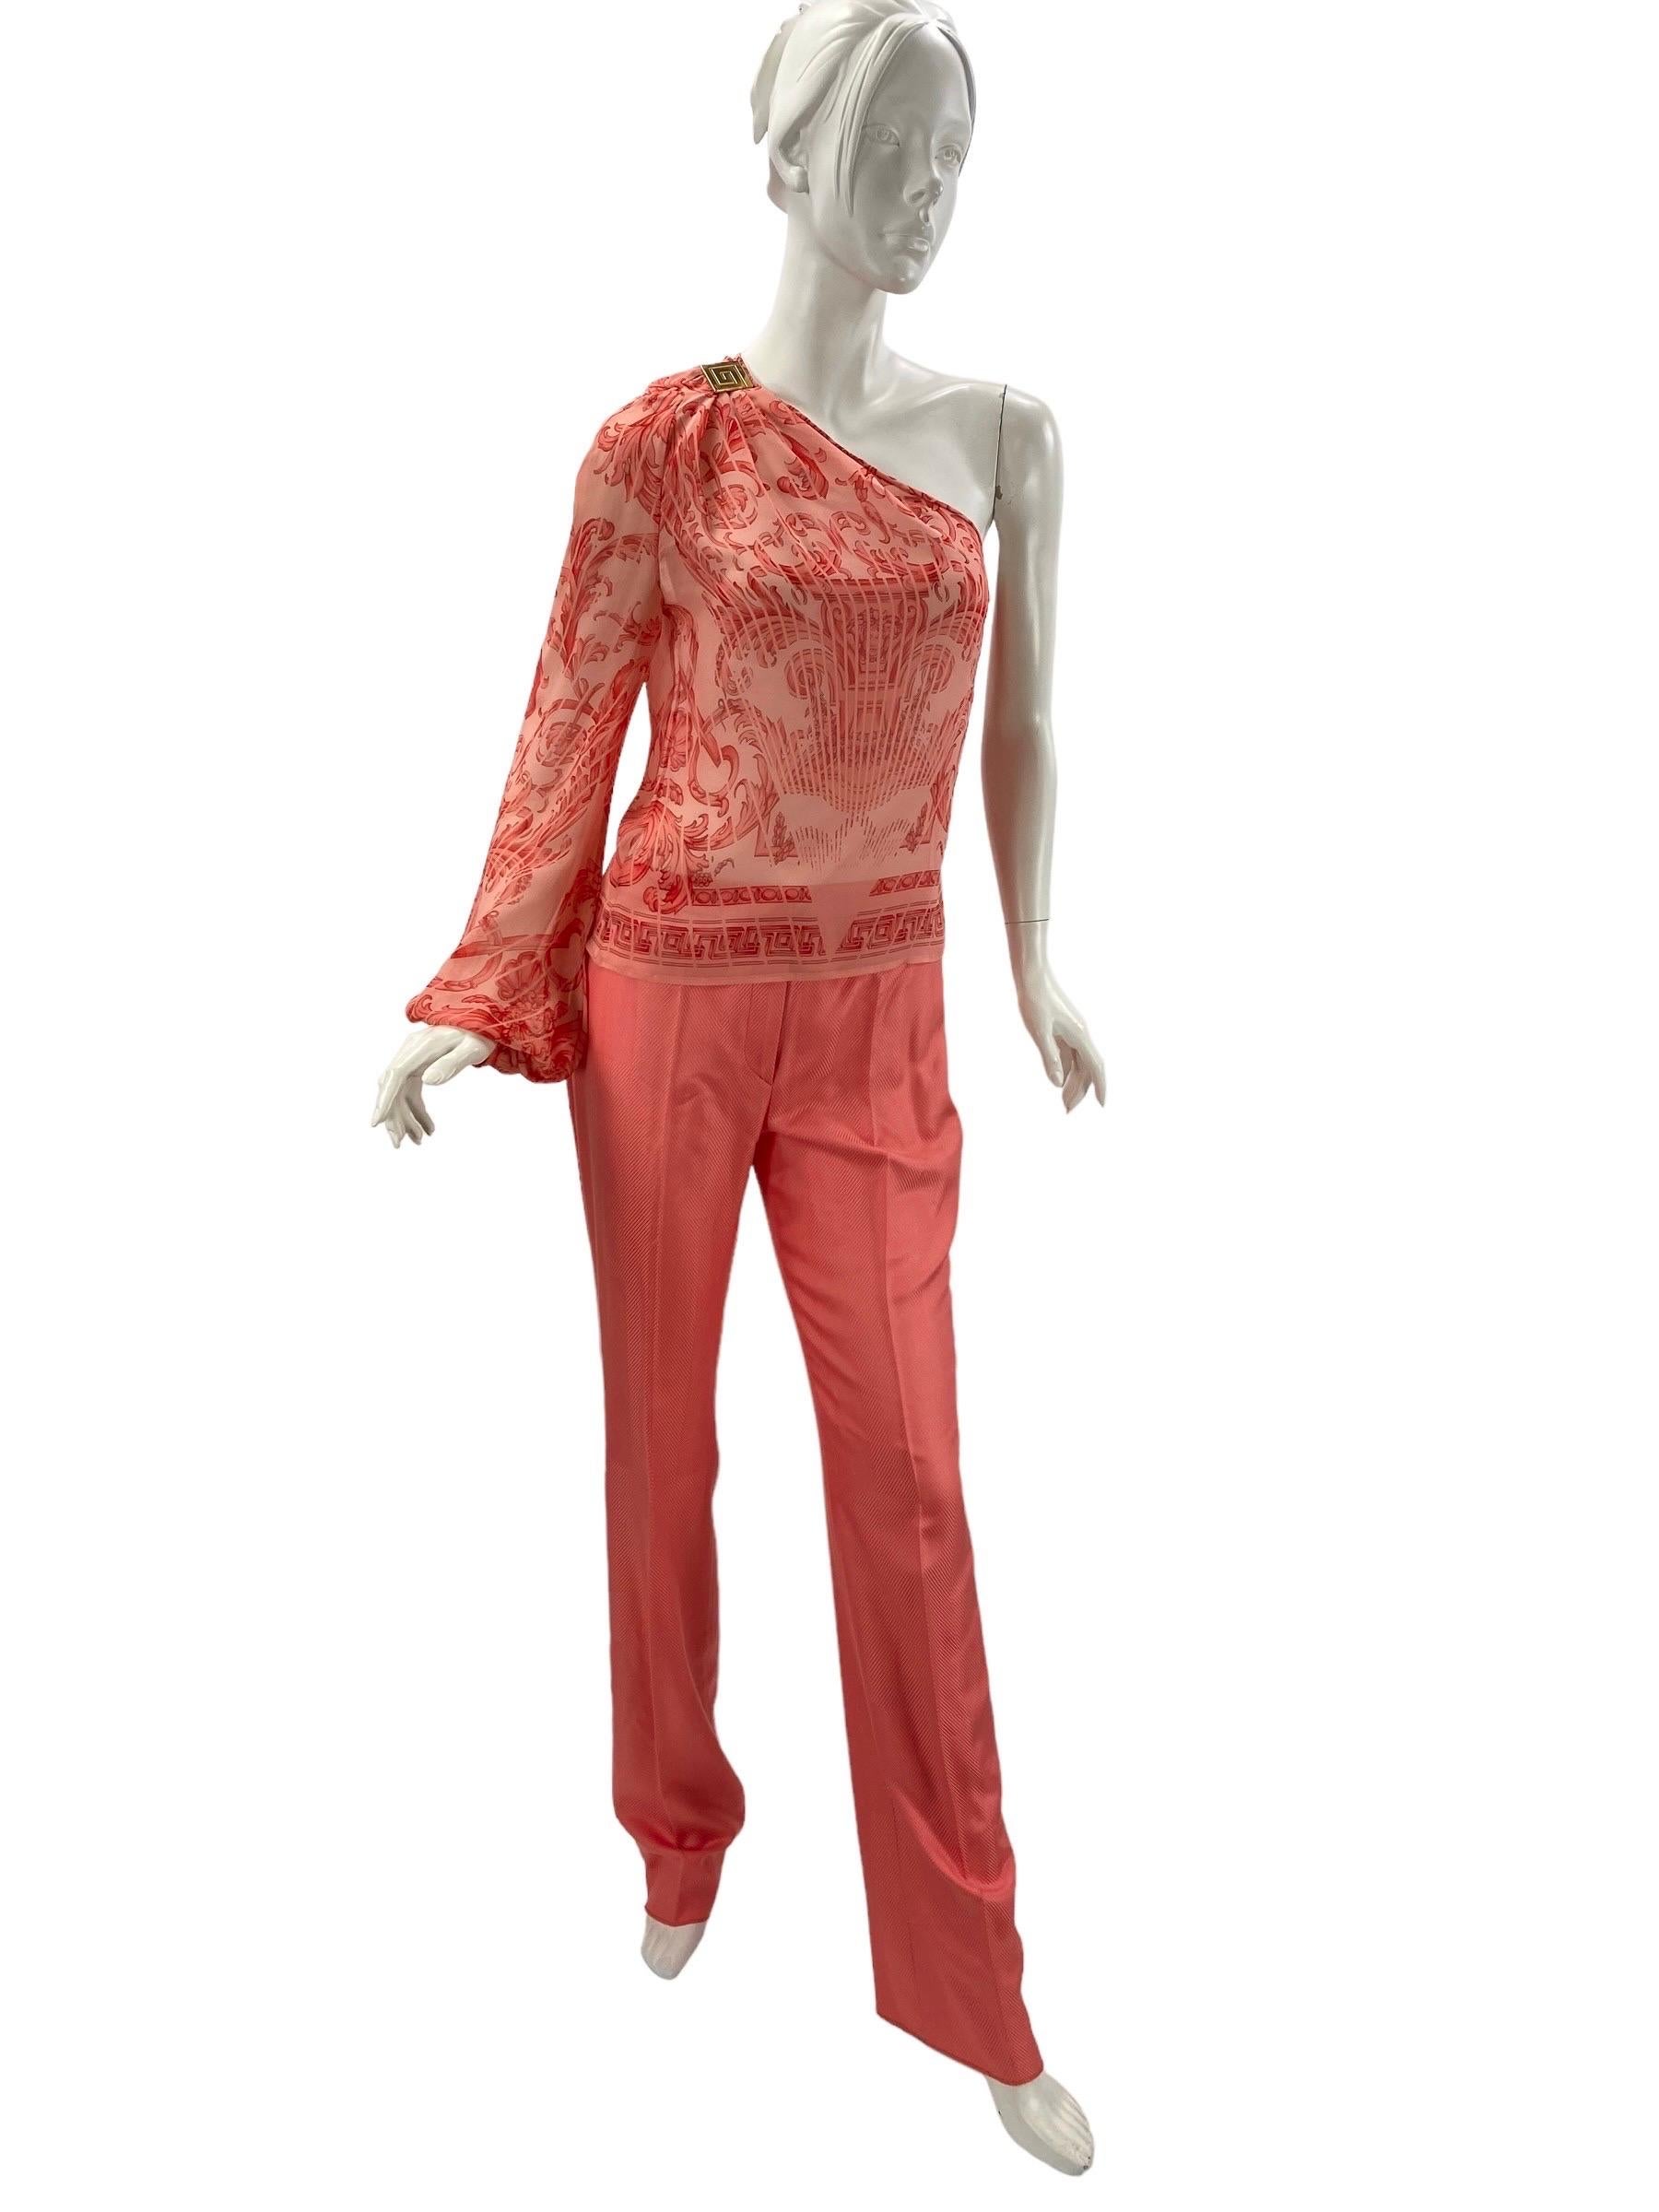 Vintage Gianni Versace Couture Pink Silk 3pc Pant Suit - Black Label.
L'ensemble comprend : un pantalon, un gilet à dos nu et un haut.
Taille italienne 42 - US 6/8
100% soie, couleur rose.
Pantalon : Taille - 30.5 pouces, Hanches - 36/38